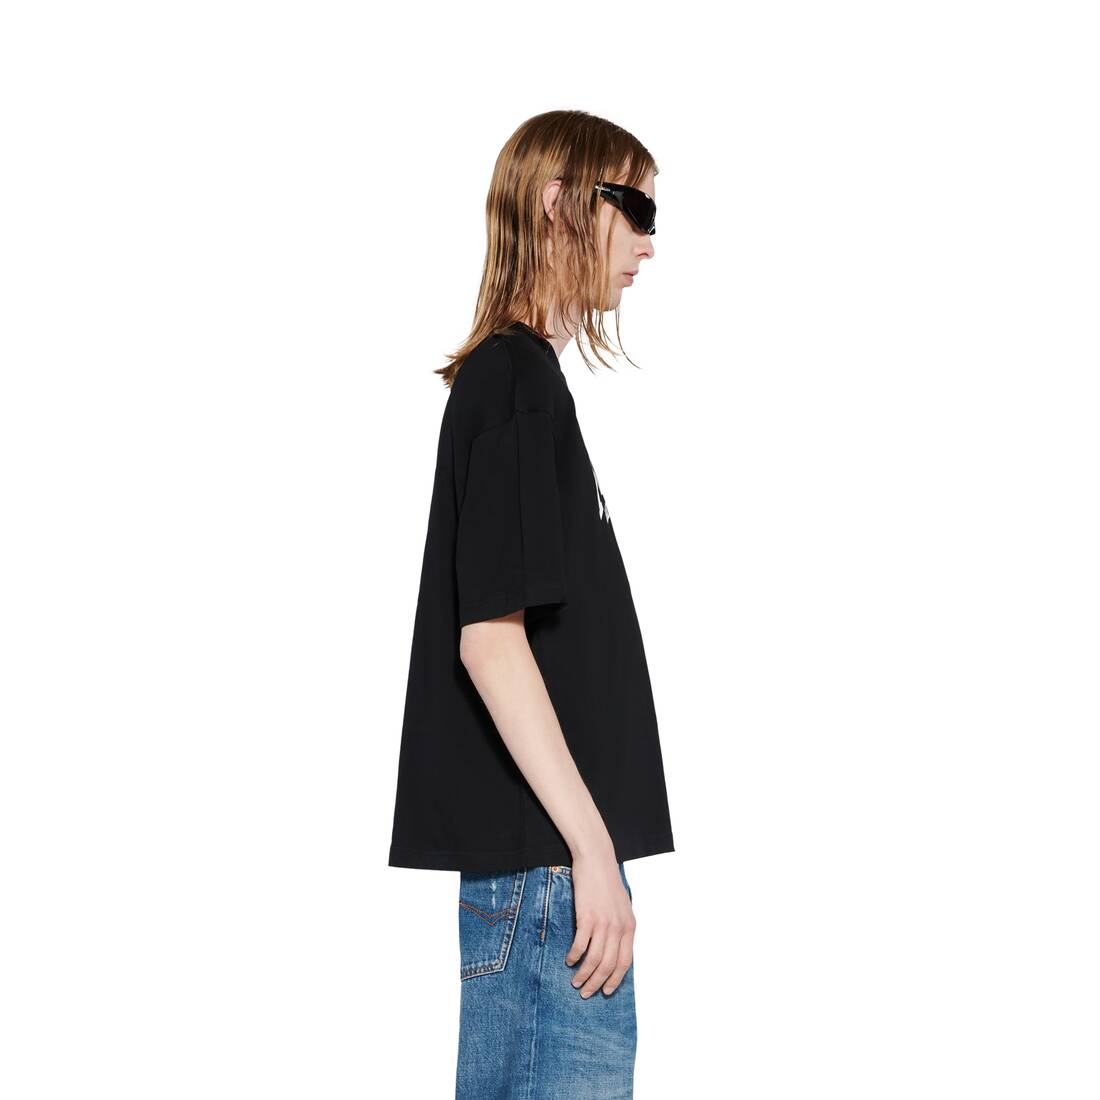 Men's Cities Paris T-shirt Medium Fit in Black